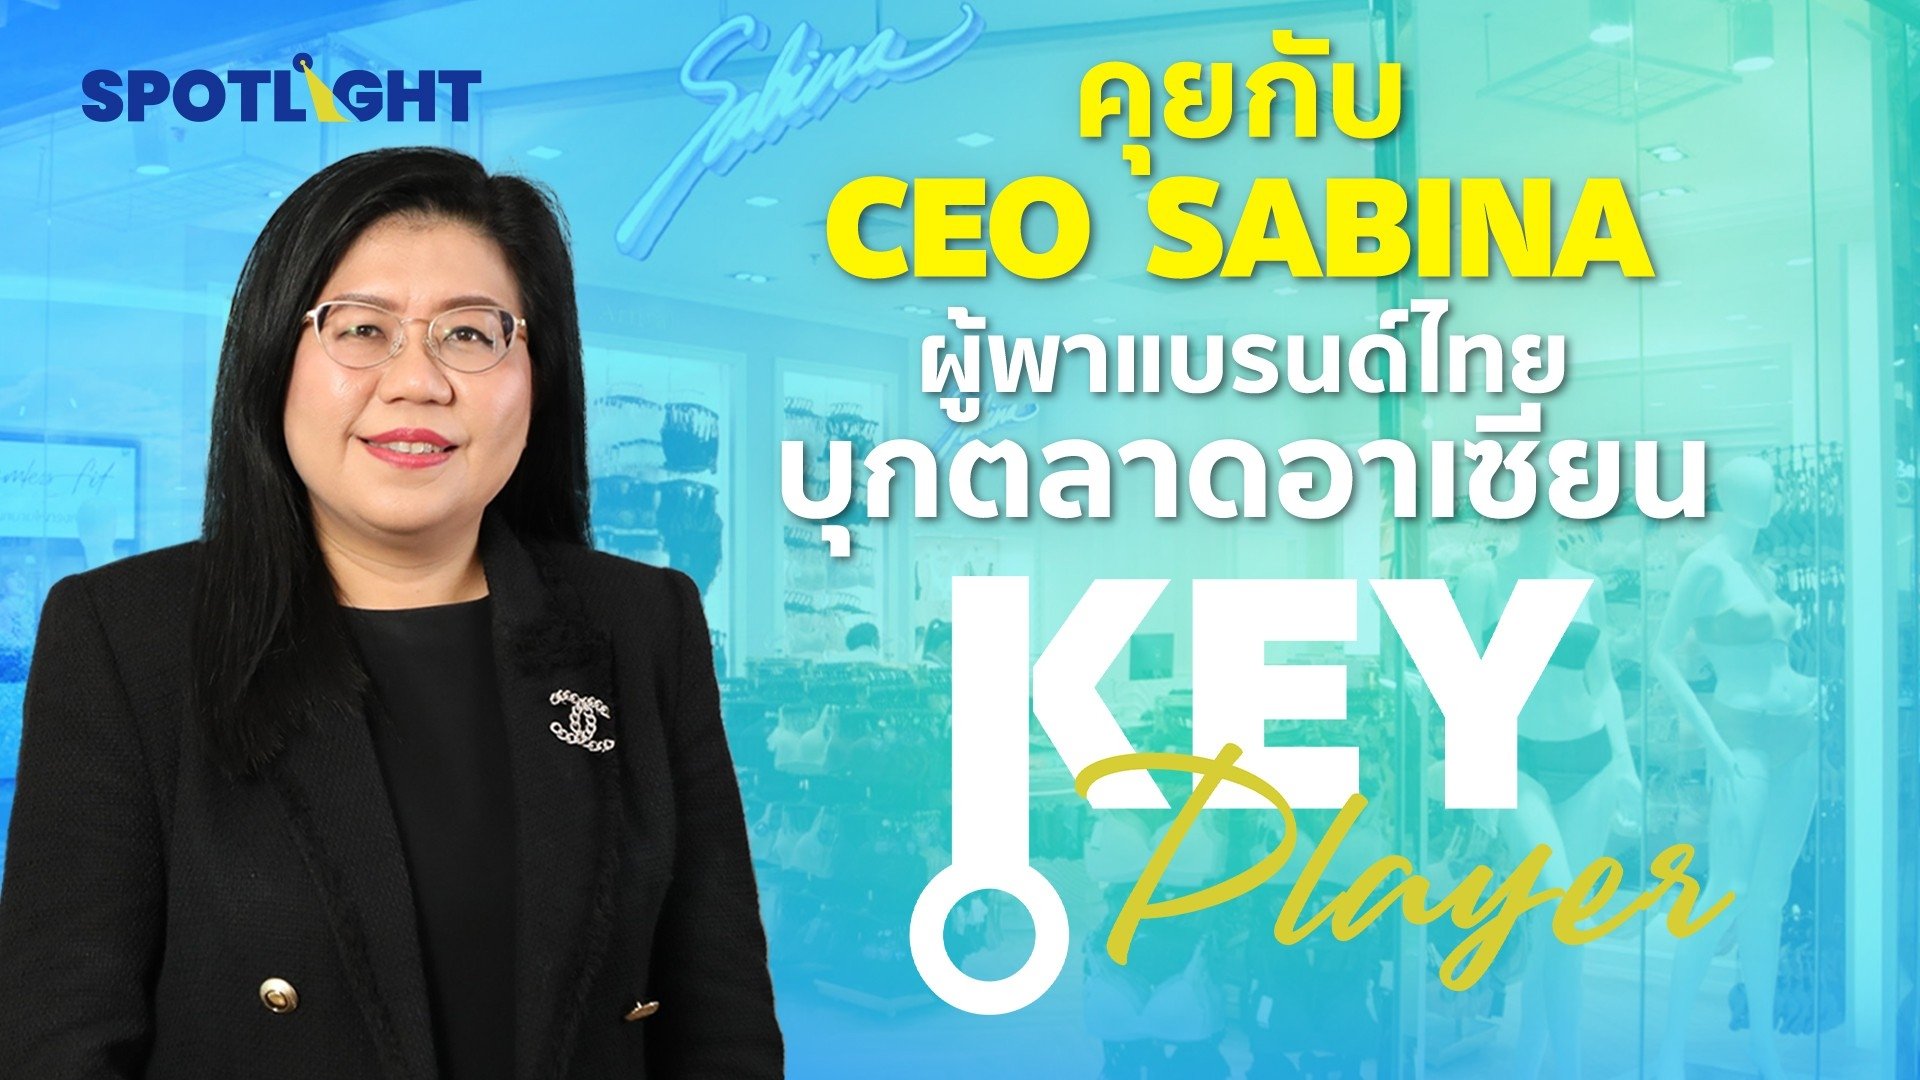 คุยกับ CEO  SABINA ผู้พาแบรนด์ไทย บุกตลาดอาเซียน | Spotlight | 15 ส.ค. 66 | AMARIN TVHD34